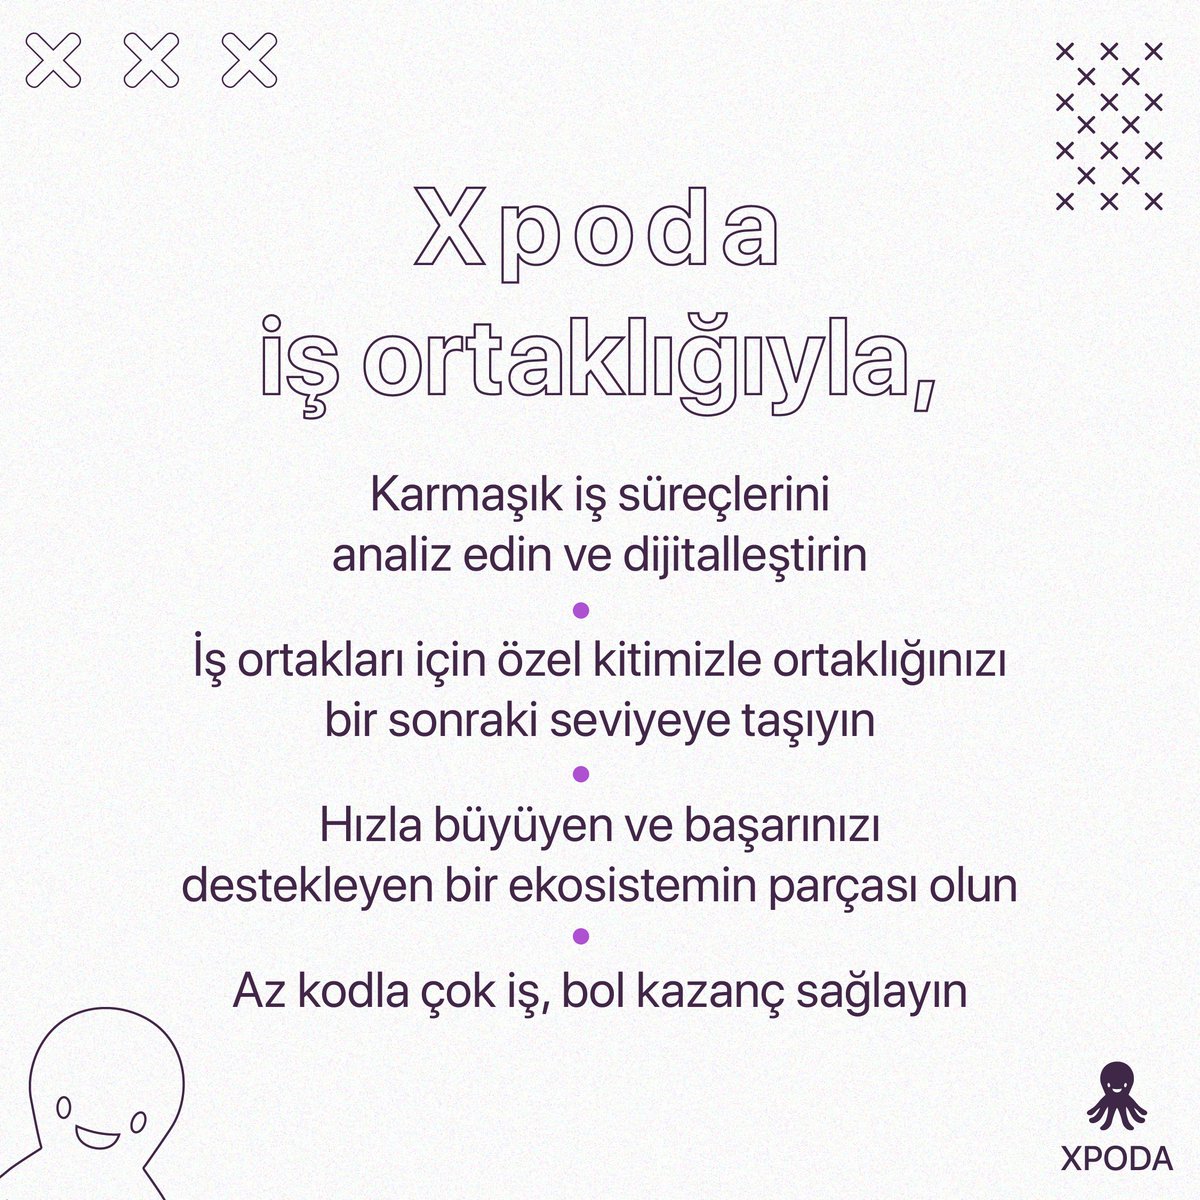 İnovasyonun sınırlarını zorlayan bir dünyada, Türkiye’nin öncü No-code platformu Xpoda’nın iş ortağı olun! Zamandan ve maliyetten tasarruf ederek projelerinizi hızlandırın. Xpoda ekosistemine katılarak başarınızı destekleyen bir topluluğun parçası olun! xpoda.com/is-ortakligi/i…